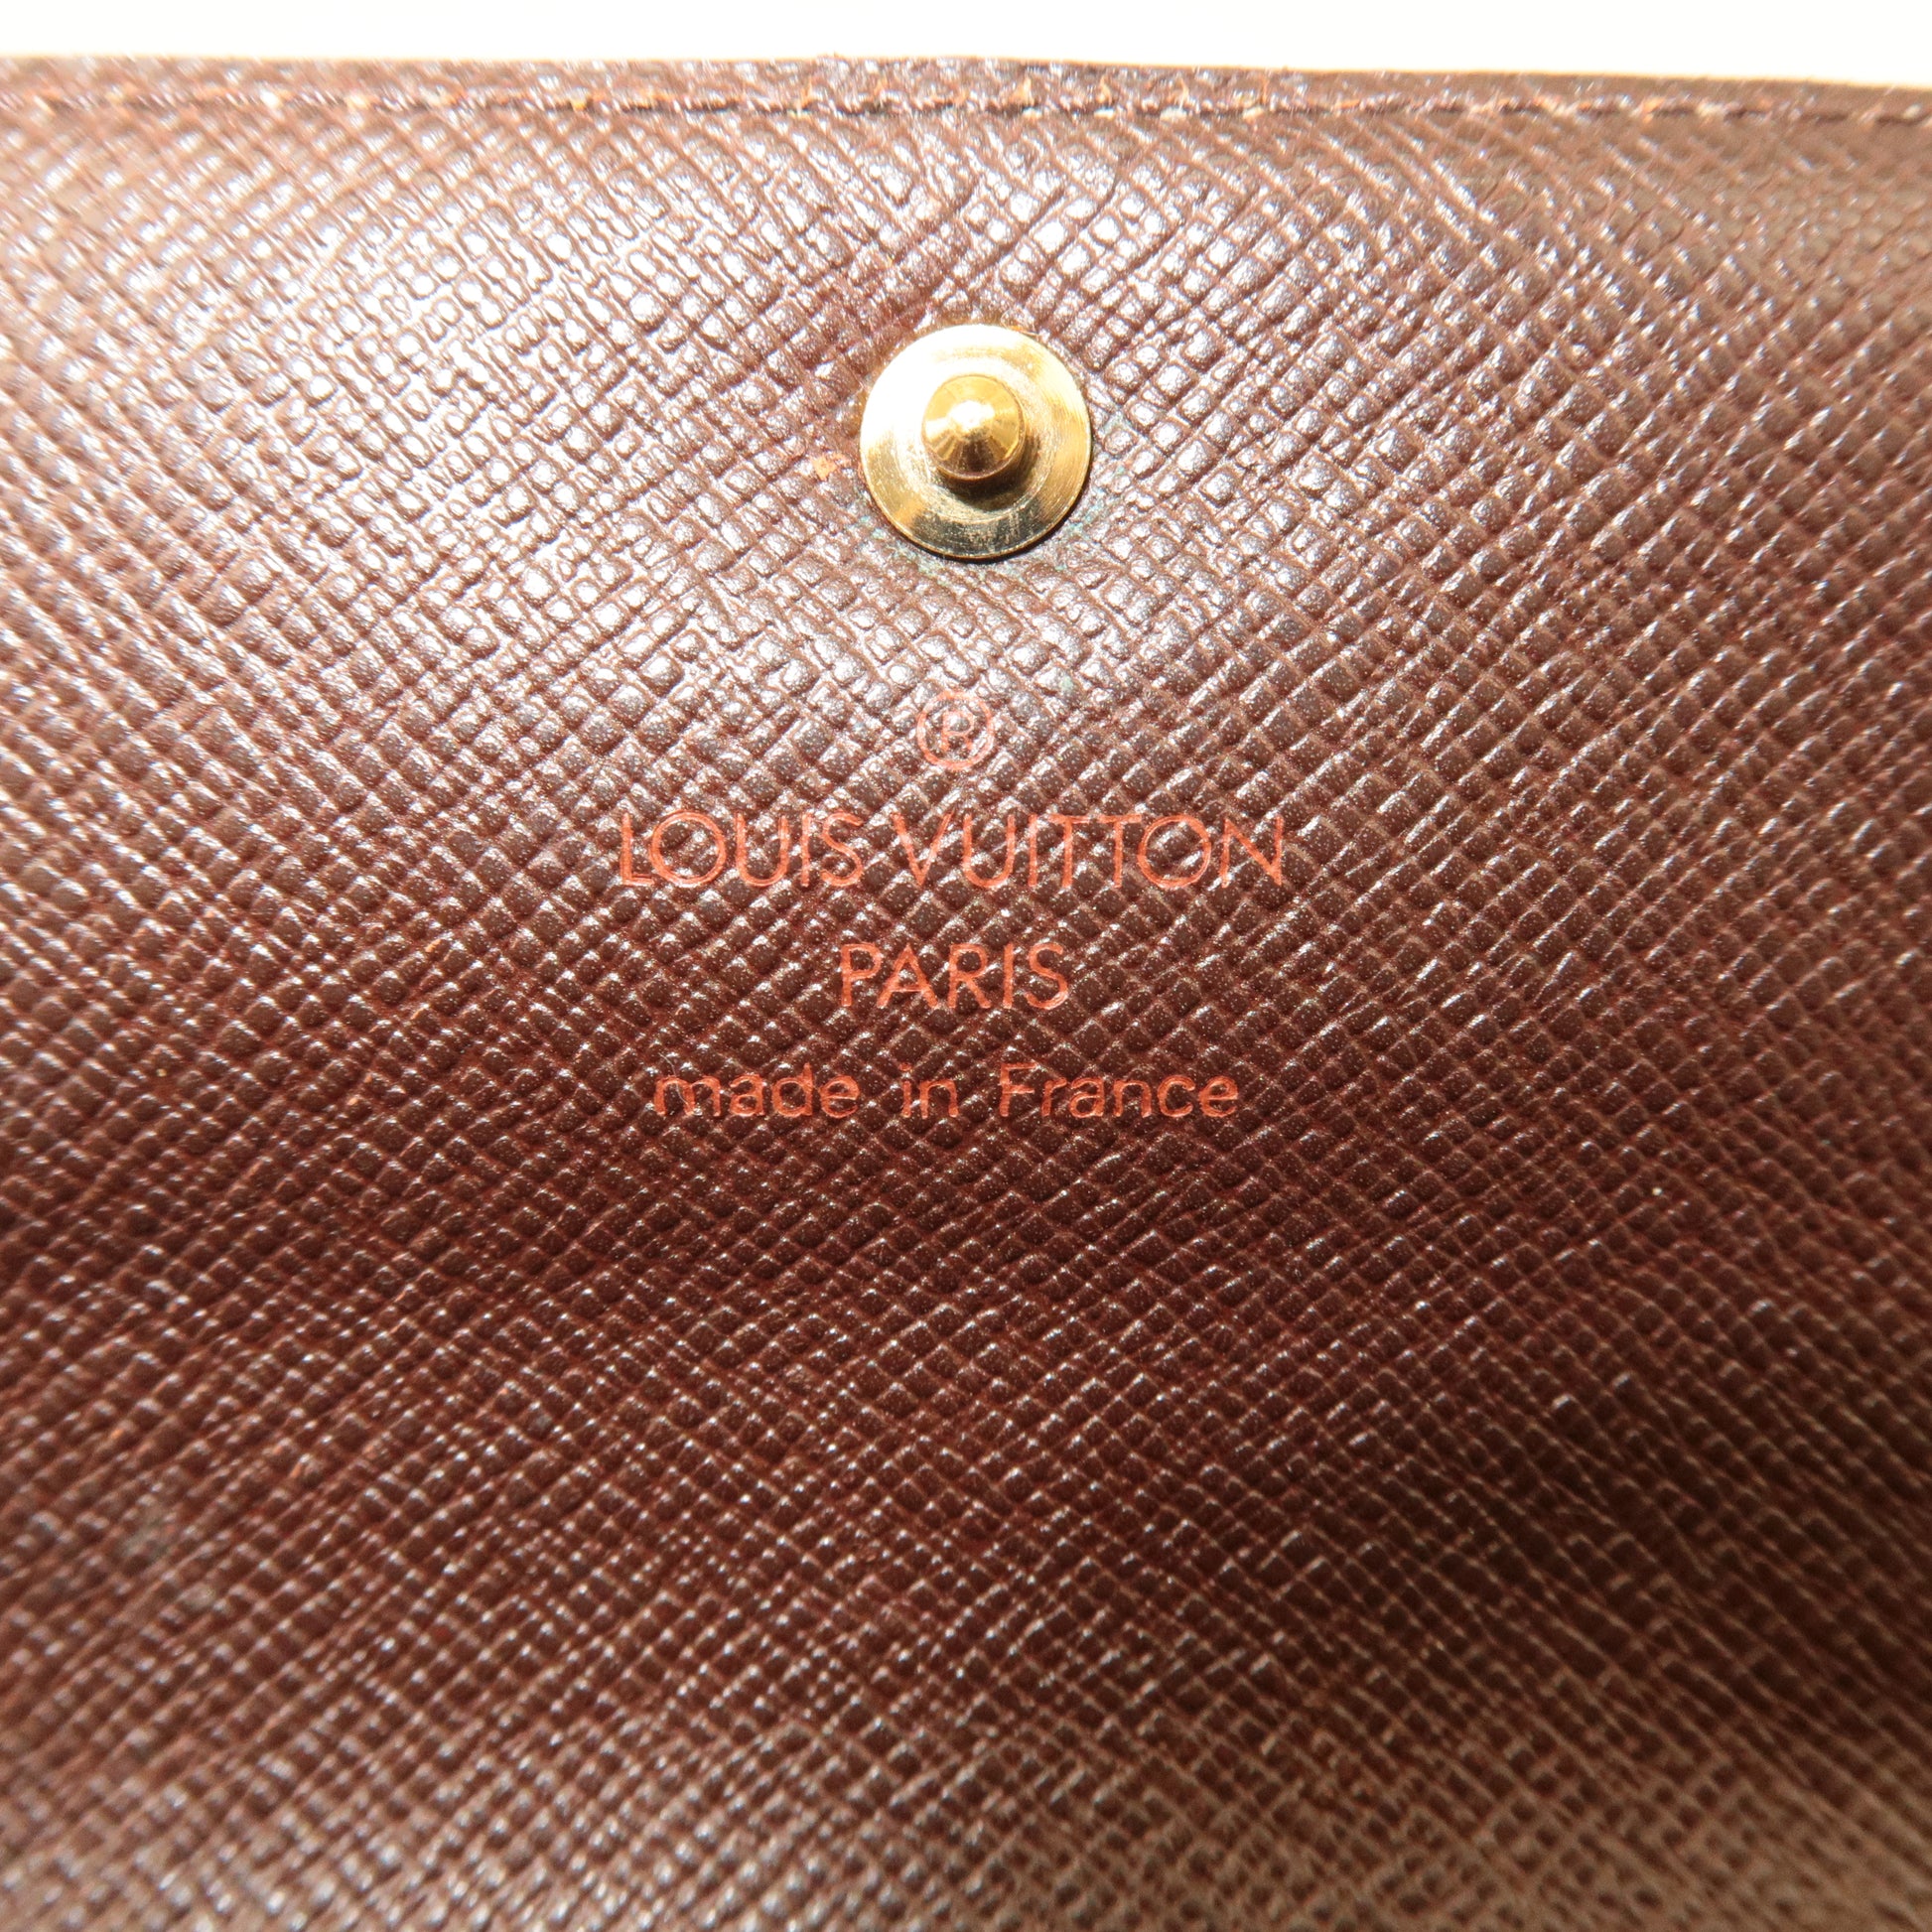 Louis-Vuitton-Damier-Ebene-Monogram-Set-of-2-Wallet-N61675-M61652